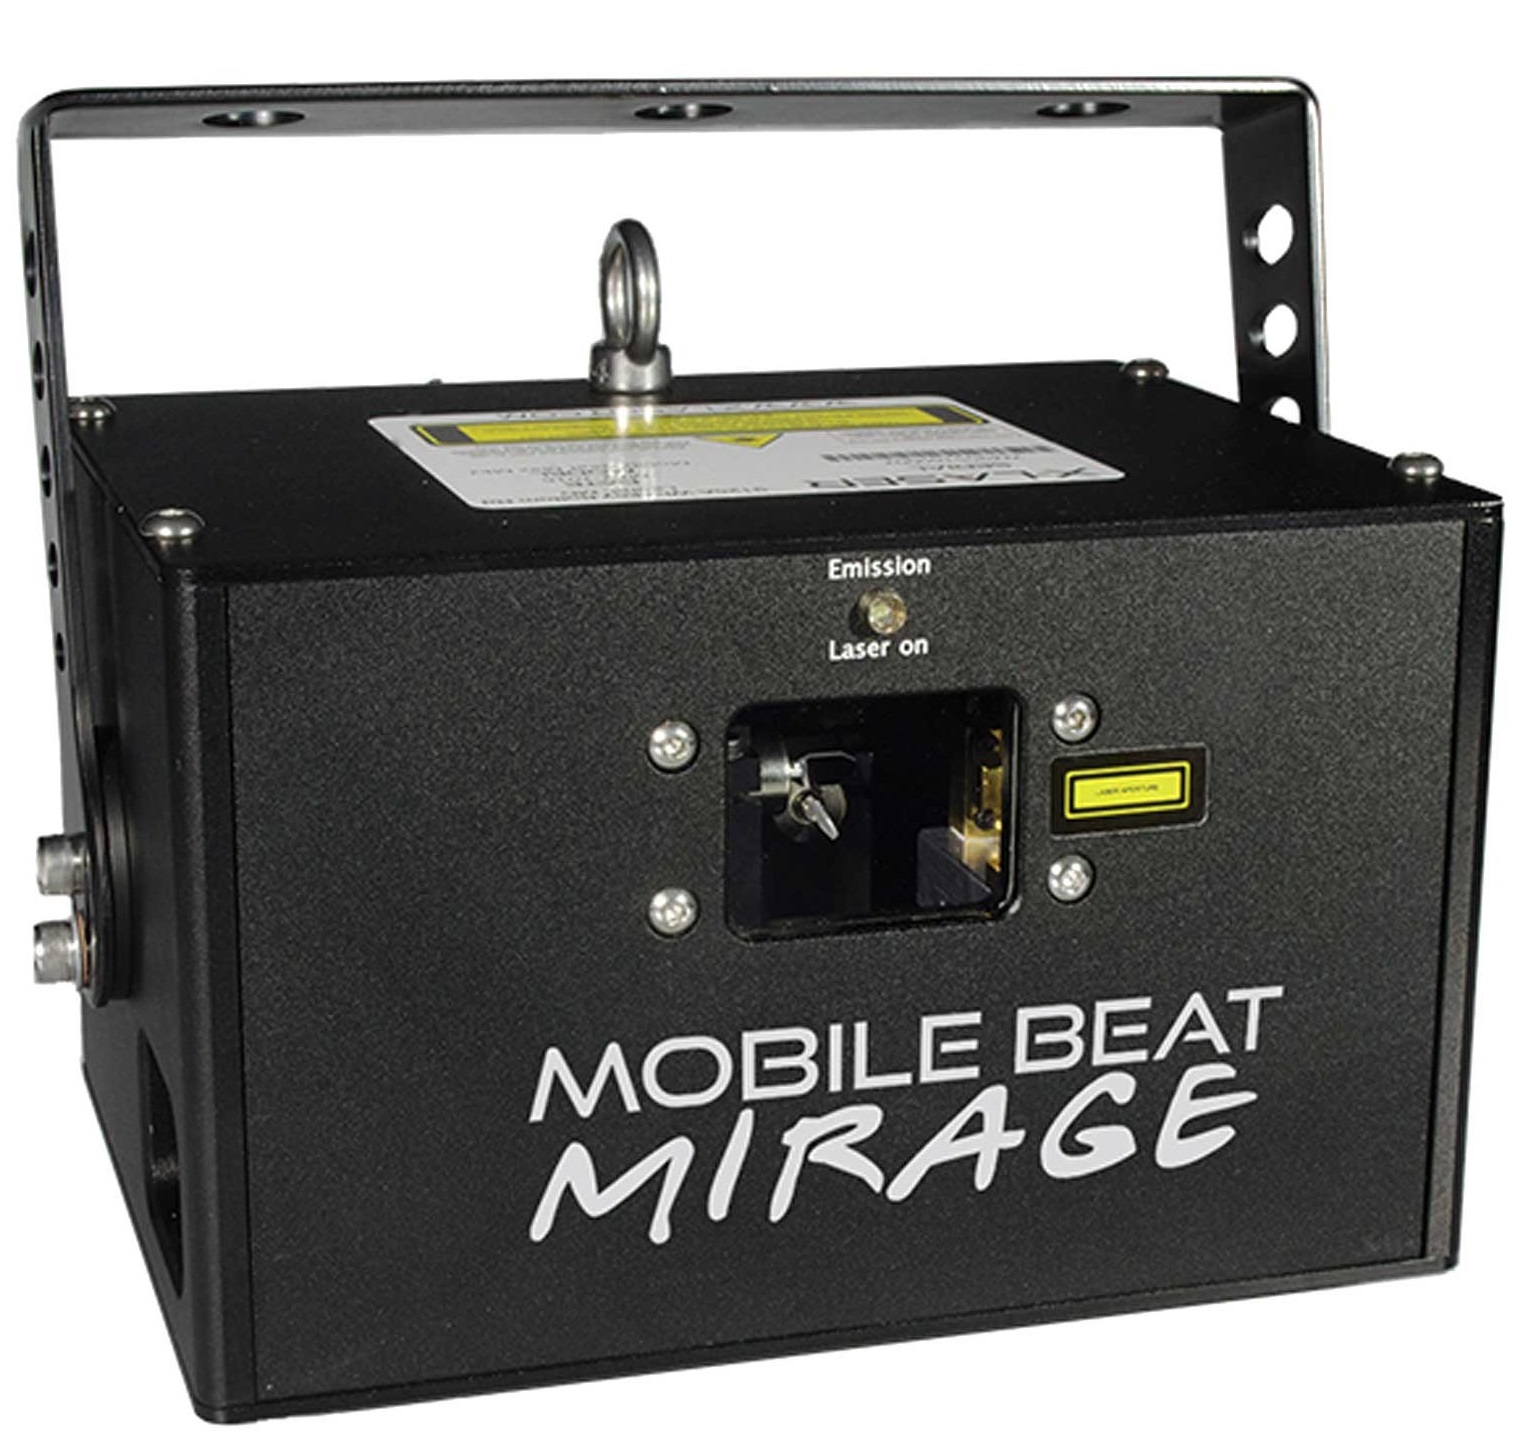 x-laser-mobile-beat-mirage.jpeg